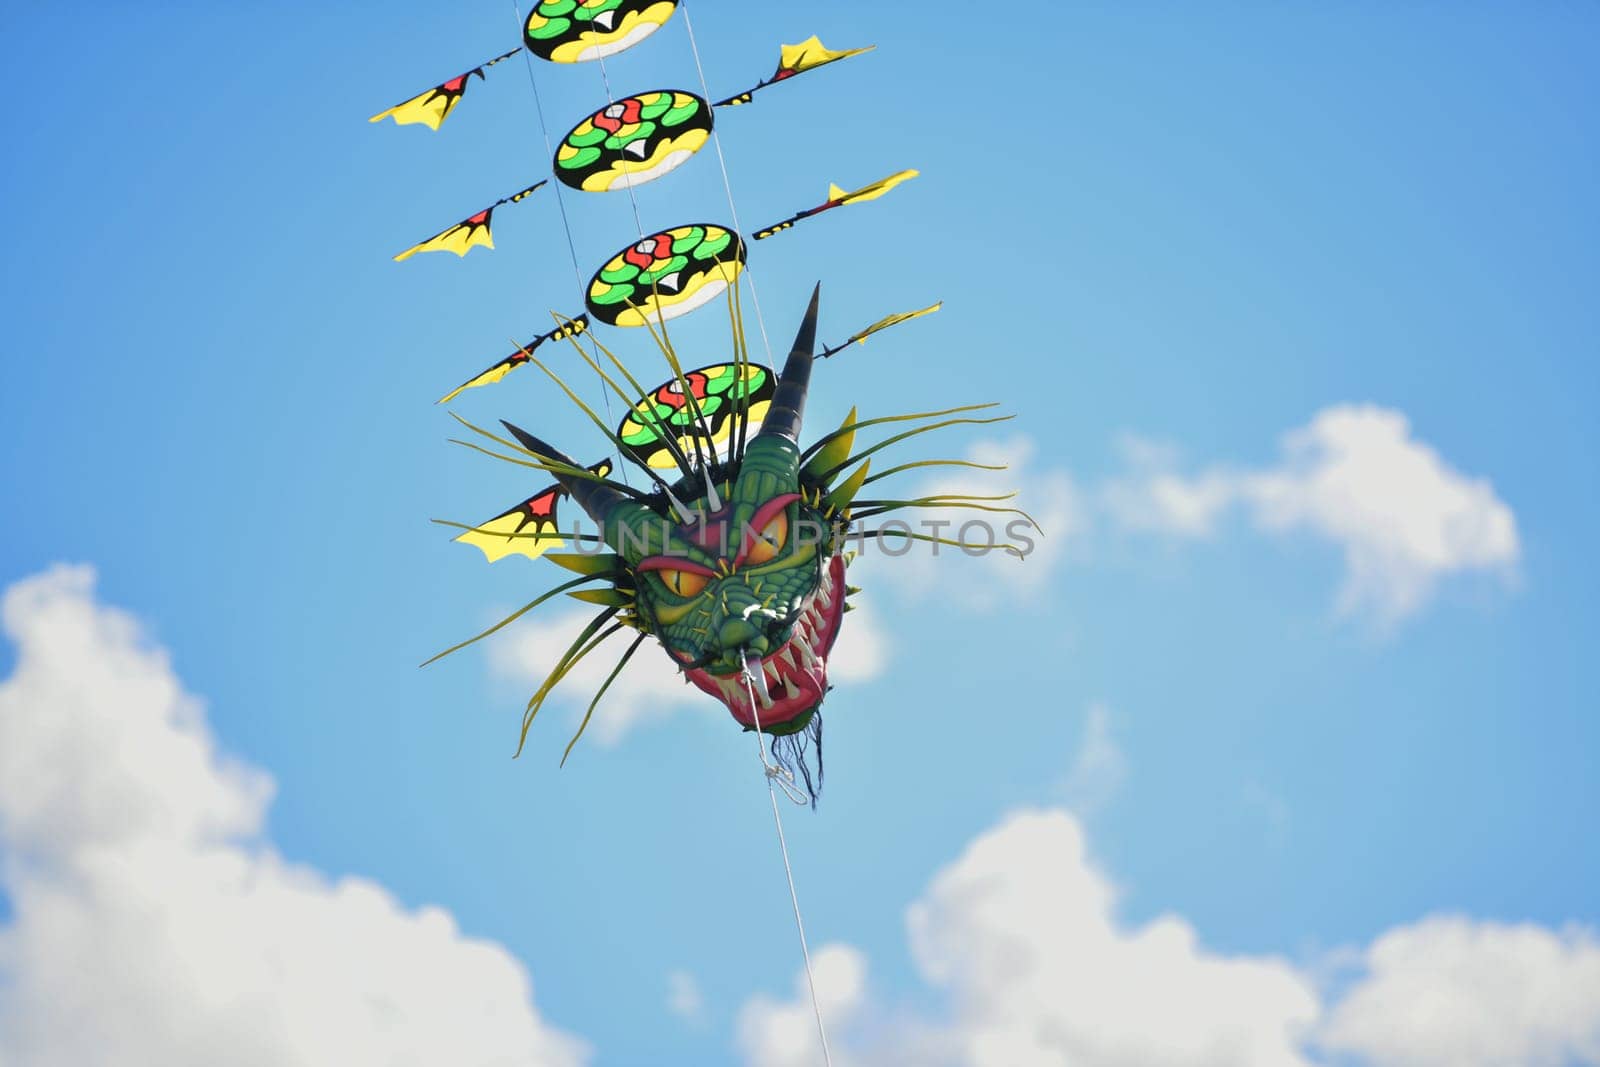 Green dragon kite in the sky